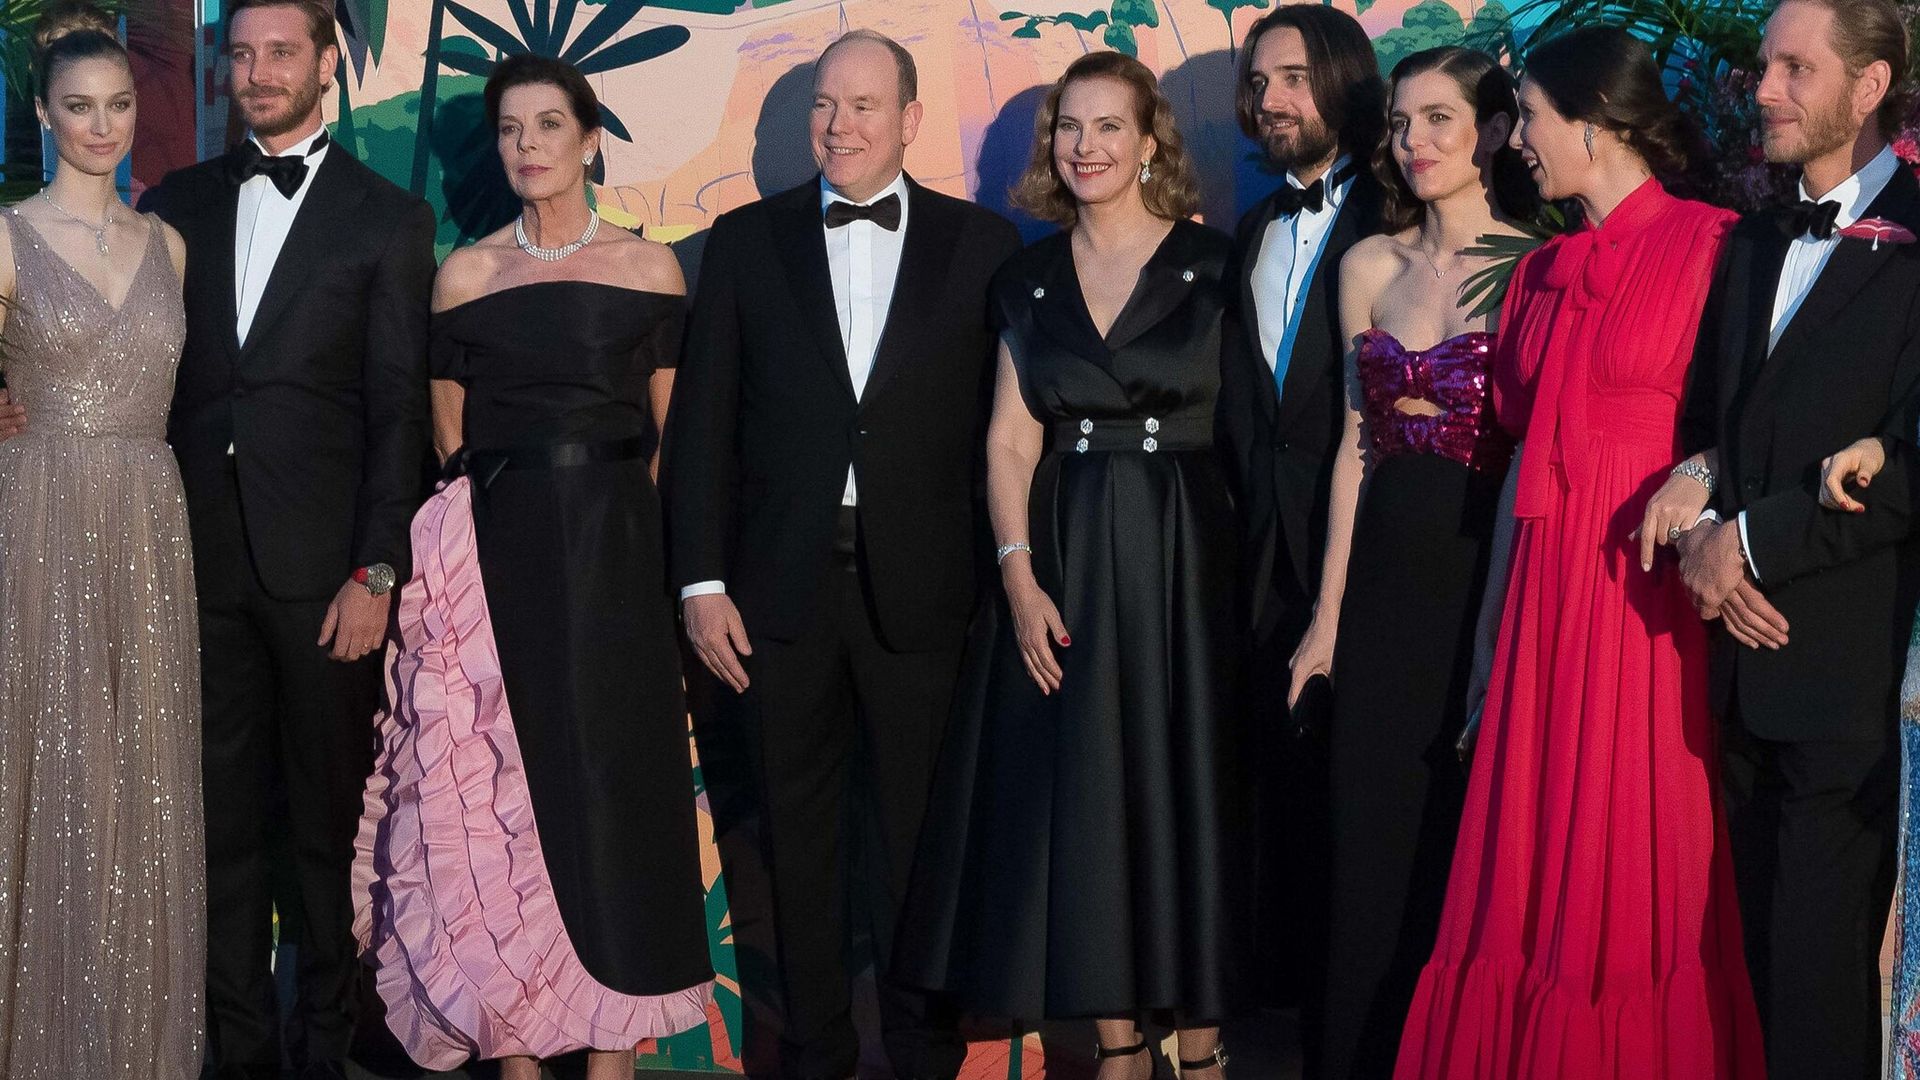 La familia real de Mónaco llevará su historia a la pantalla al estilo de ‘The Crown’